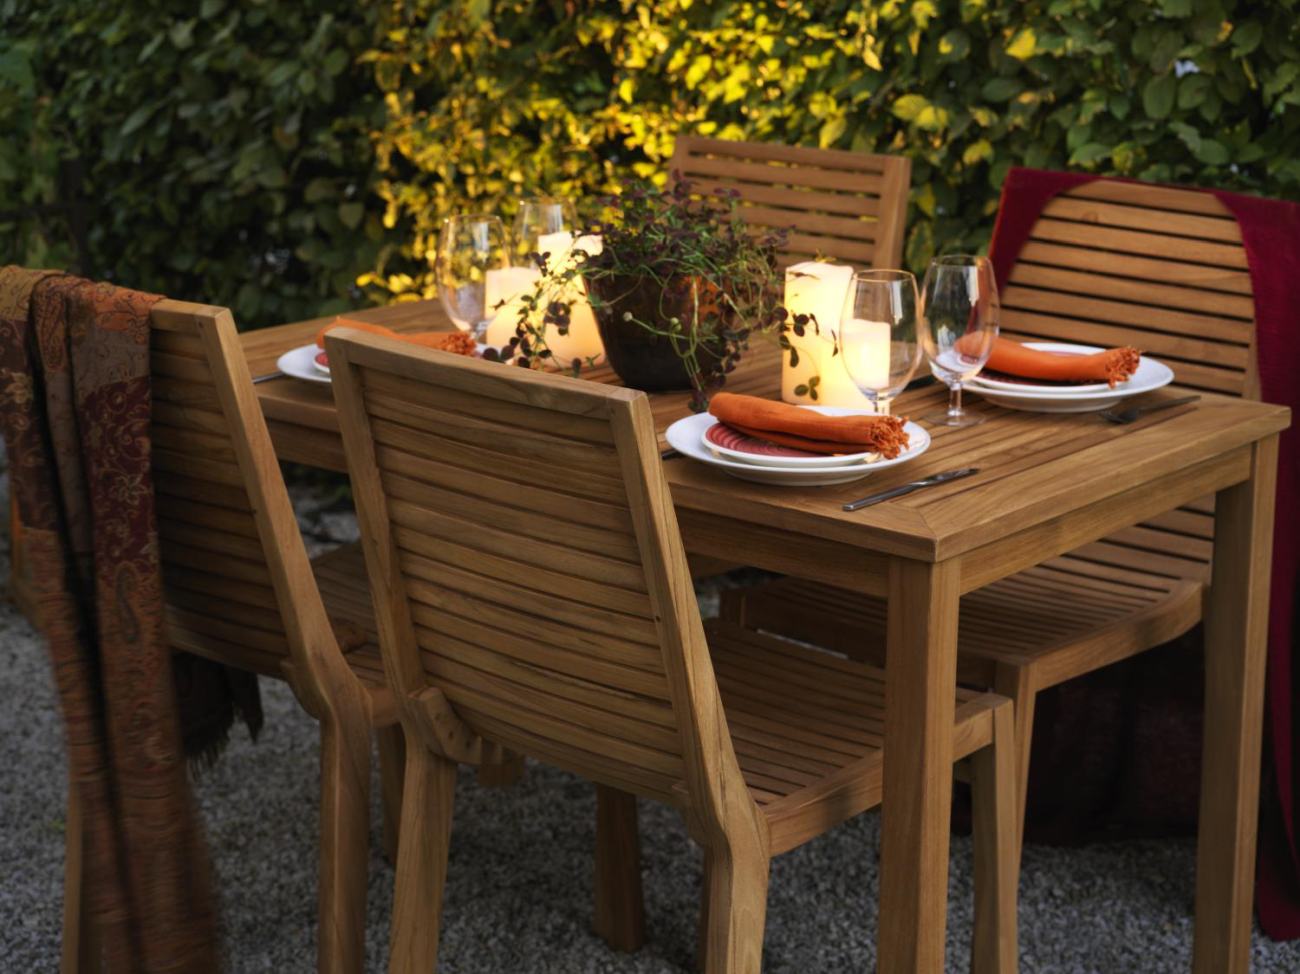 Der Gartenesstisch Volos überzeugt mit seinem modernen Design. Gefertigt wurde die Tischplatte aus Teakholz, welche einen natürlichen Farbton besitzt. Das Gestell ist auch aus Teakholz und hat eine natürliche Farbe. Der Tisch besitzt eine Länge von 130 cm